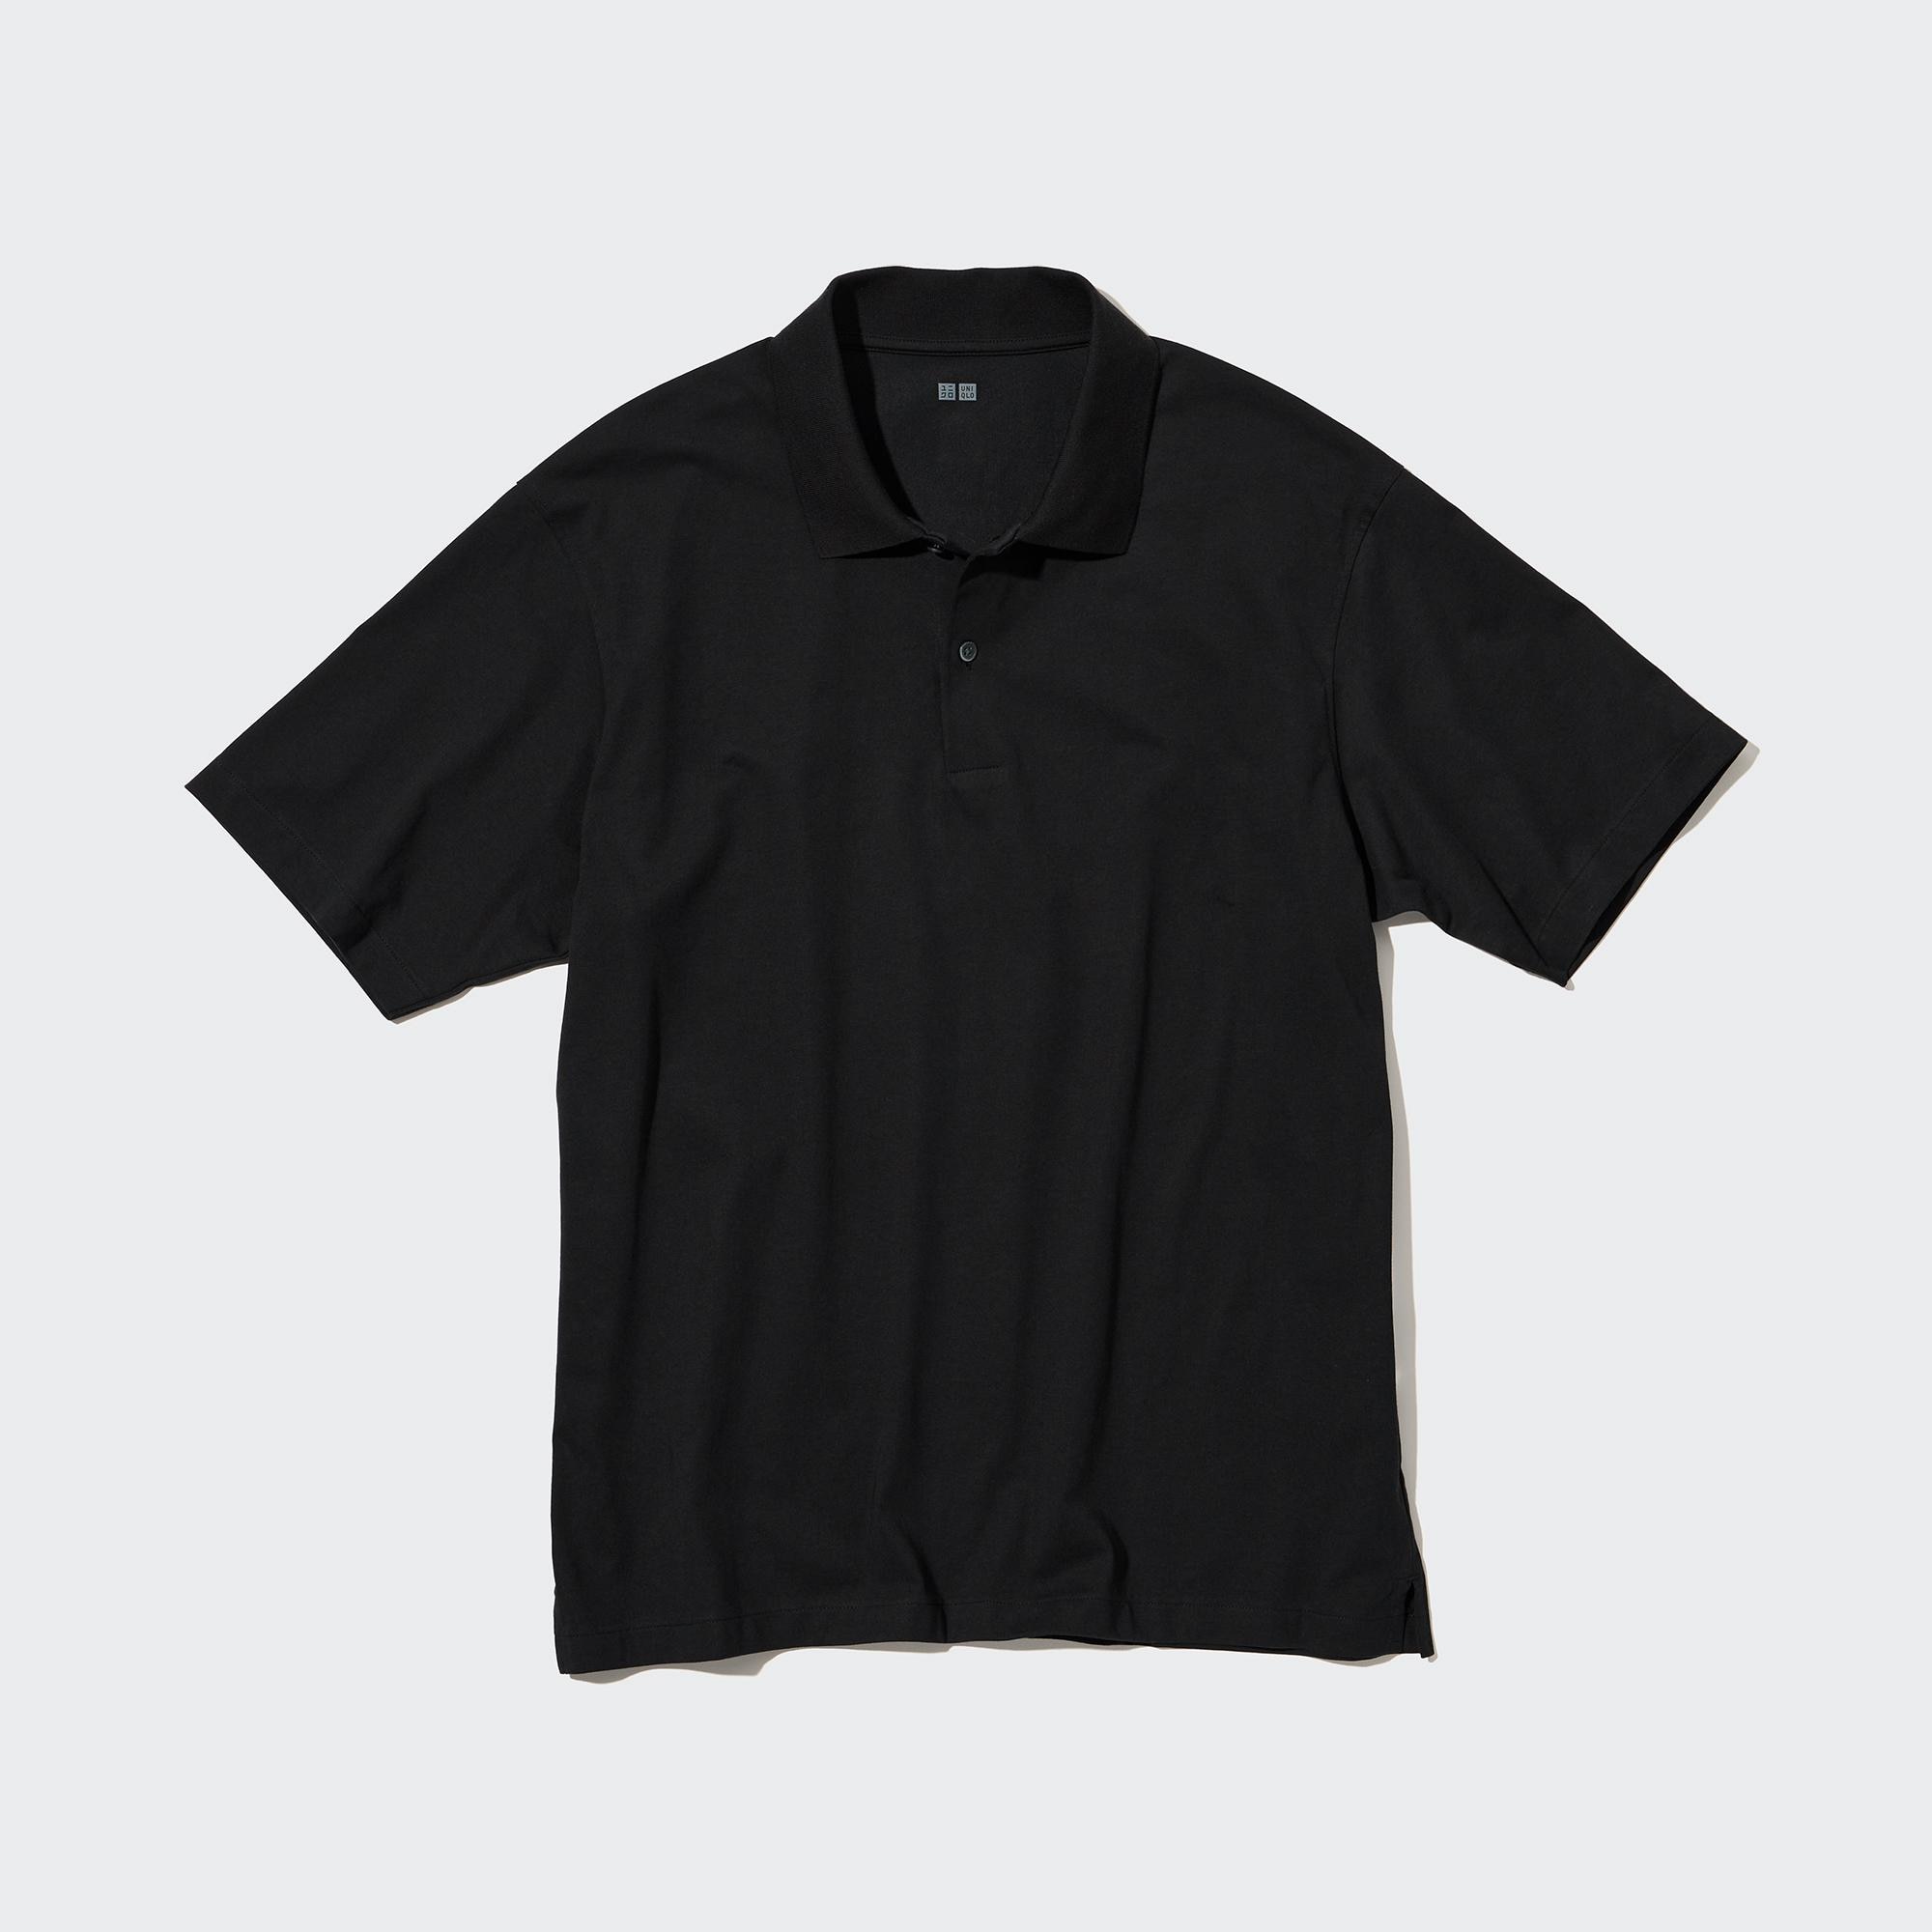 Chia sẻ với hơn 88 về black polo shirt uniqlo